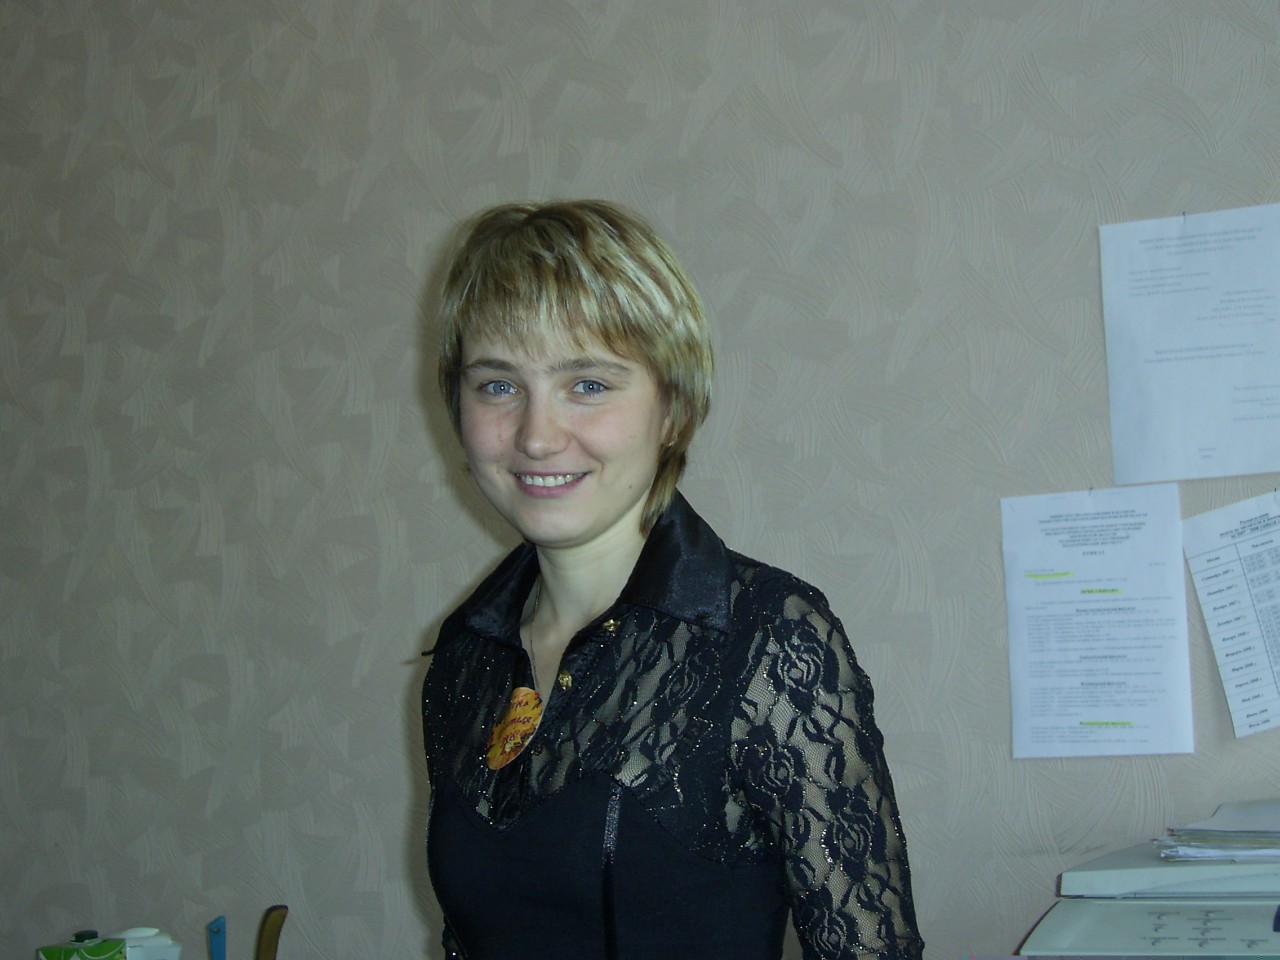 Светлана Олефир